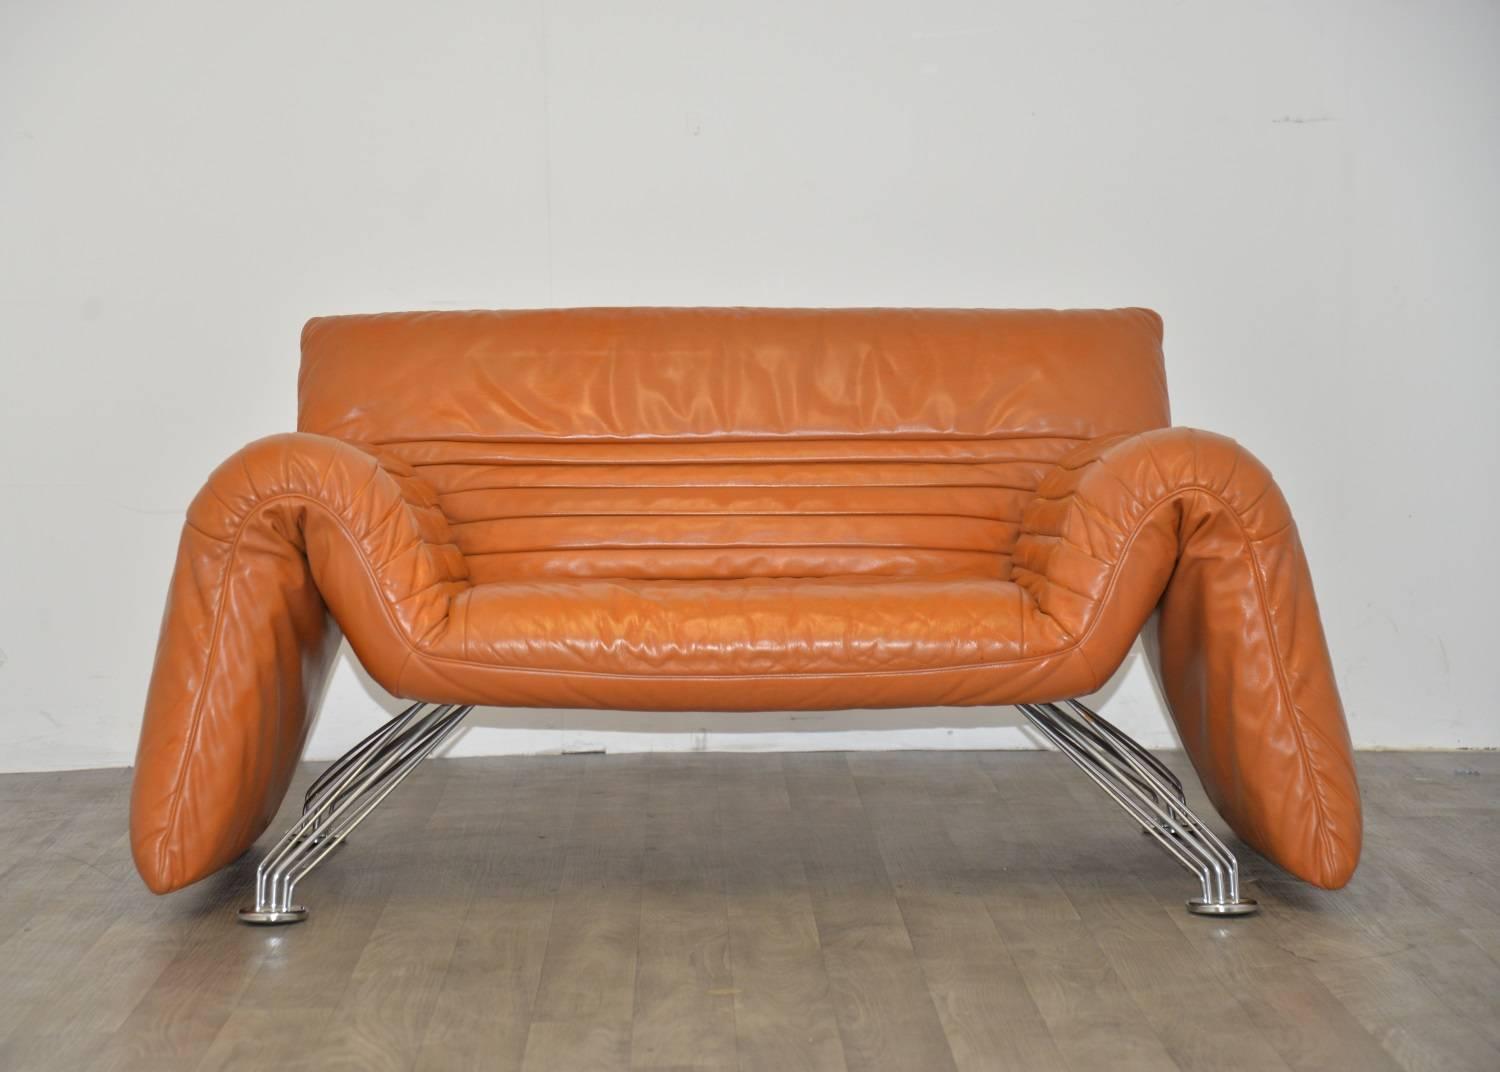 Swiss Vintage de Sede Sofa or Chaise Longue by Winfried Totzek, 1988